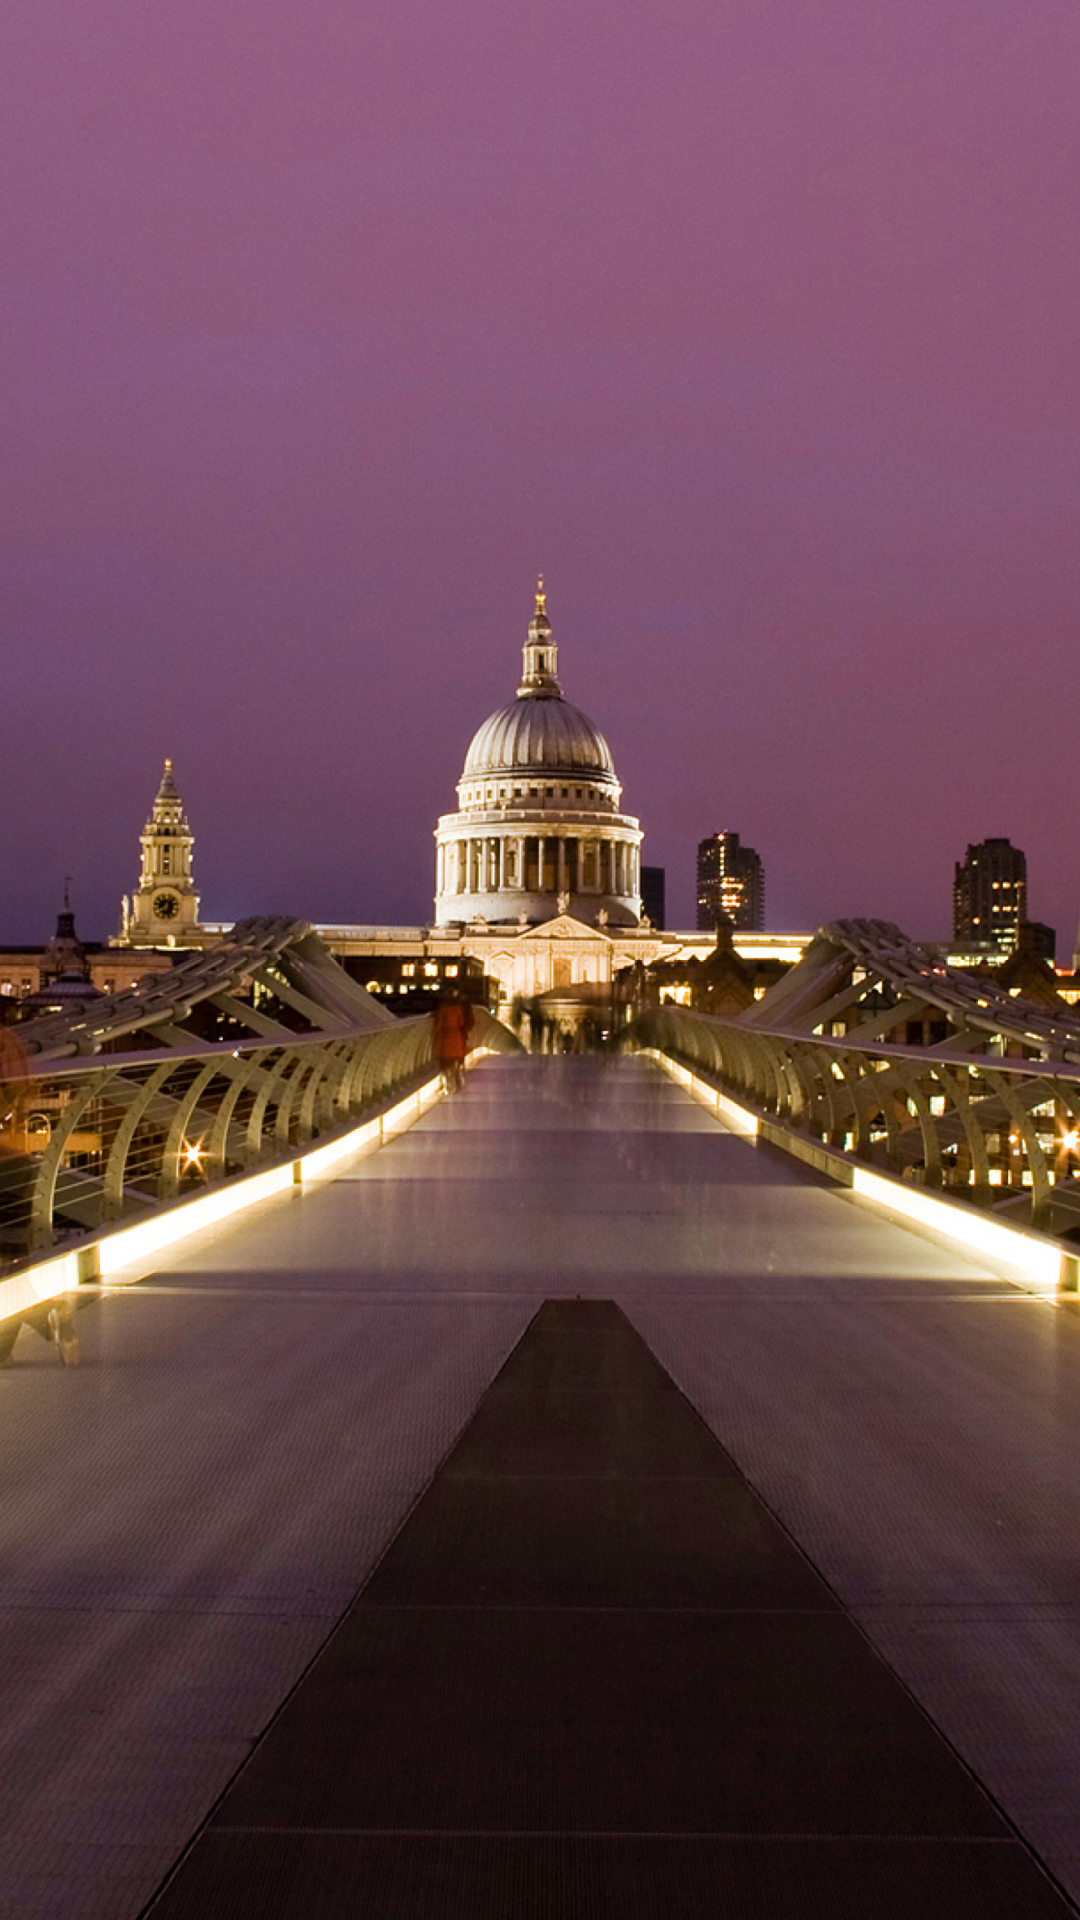 Millennium Futuristic Bridge in London screenshot #1 1080x1920